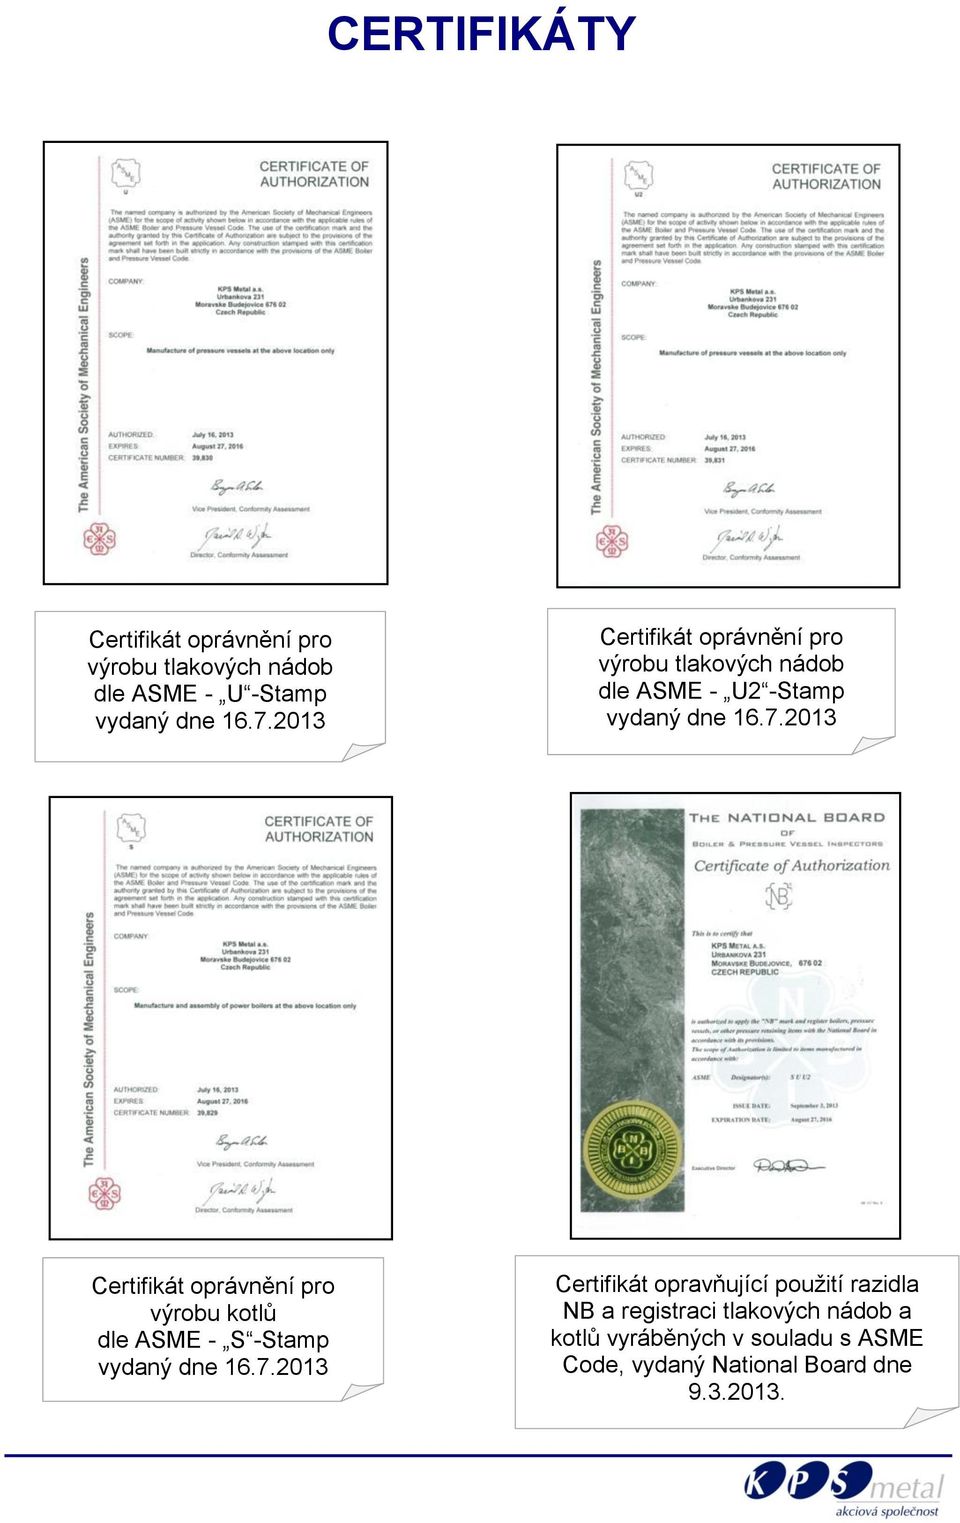 2013 Certifikát oprávnění pro výrobu kotlů dle ASME - S -Stamp vydaný dne 16.7.